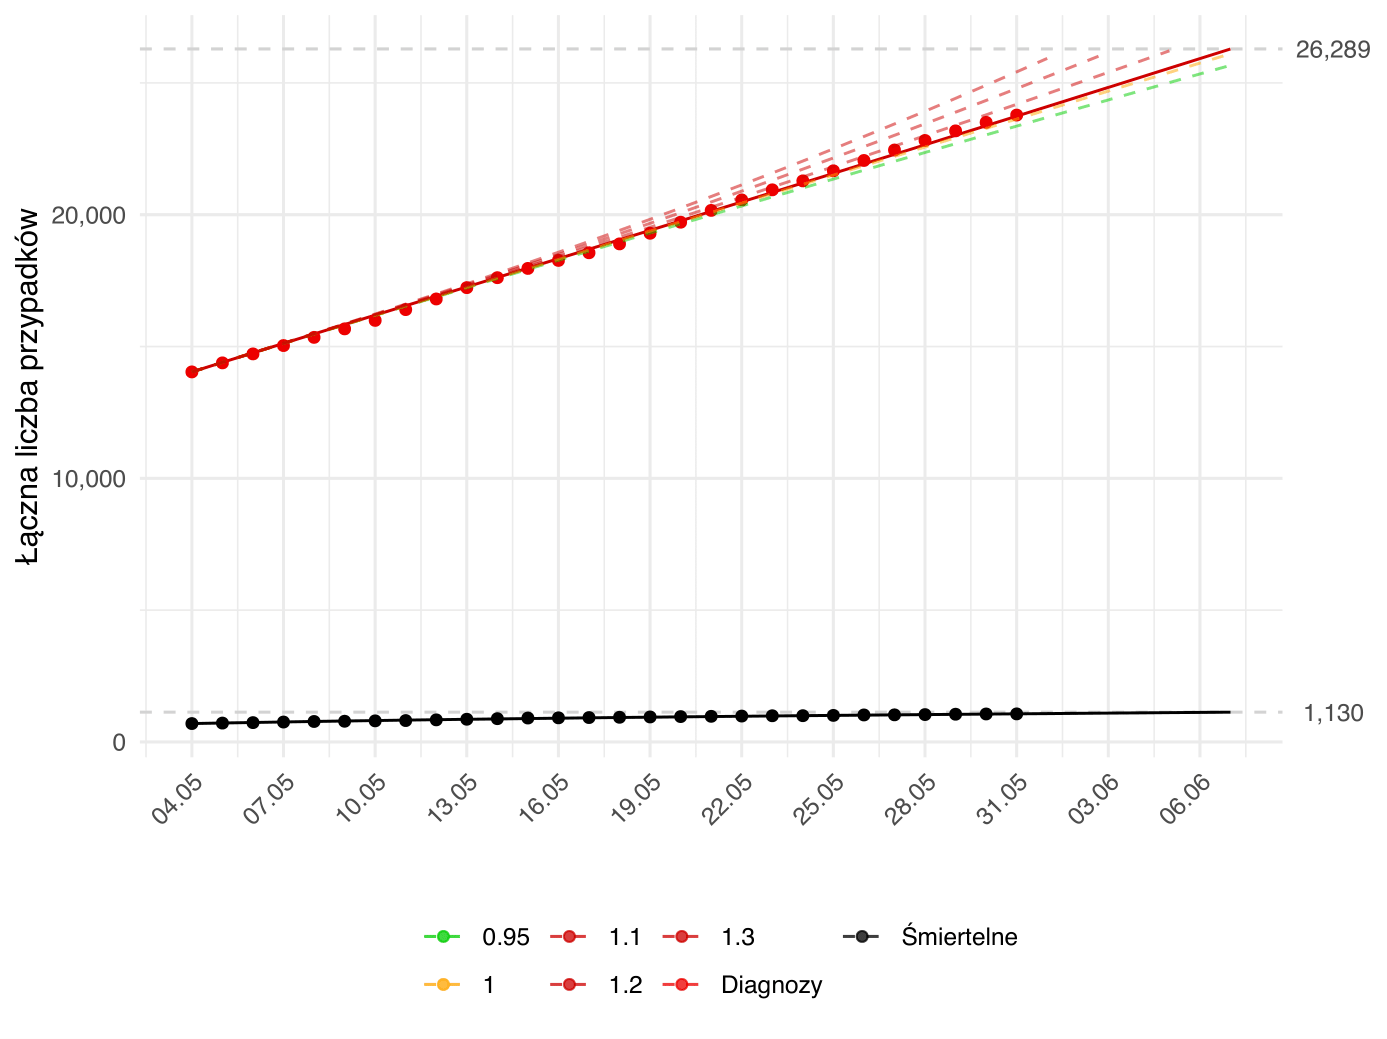 Prognoza krótkoterminowa liczby osób diagnozowanych i zgonów. Aktualna prognoza (linia ciągła) oparta na modelu dopasowanym zarówno względem parametru β- związanego z redukcją kontaktów społecznych, jak i γ<sup>-1</sup> - związanego z efektywnością strategii testowania. Kolorem czerwonym oznaczona jest łączna liczba rozpoznań aż do danego dnia, zielonym - łączna liczba wyzdrowień, a czarnym - zgonów. Kropki oznaczają obserwowane dane odpowiedniej kategorii. Dodatkowo, przerywane linie przedstawiają alternatywne prognozy zależne od poziomu parametru <i>R<sub>0</sub></i>, przy parametrze γ<sup>-1</sup> (interpretowanym jako długość okresu zakaźności) ustalonym na wartość estymowaną w oparciu o dane do dnia przygotowania raportu. Kolor przerywanych linii odpowiada intensywności epidemii zgodnej z wartością parametru <i>R<sub>0</sub></i> (zielona - podkrytyczna, żółta - stan endemiczny, czerwona - nadkrytyczna). Model został dopasowany do danych od 04.05. Aktualne parametry modelu:  β = 0.06432; γ<sup>-1</sup> = 15.85809, <i>R<sub>0</sub></i> = 1.02003.